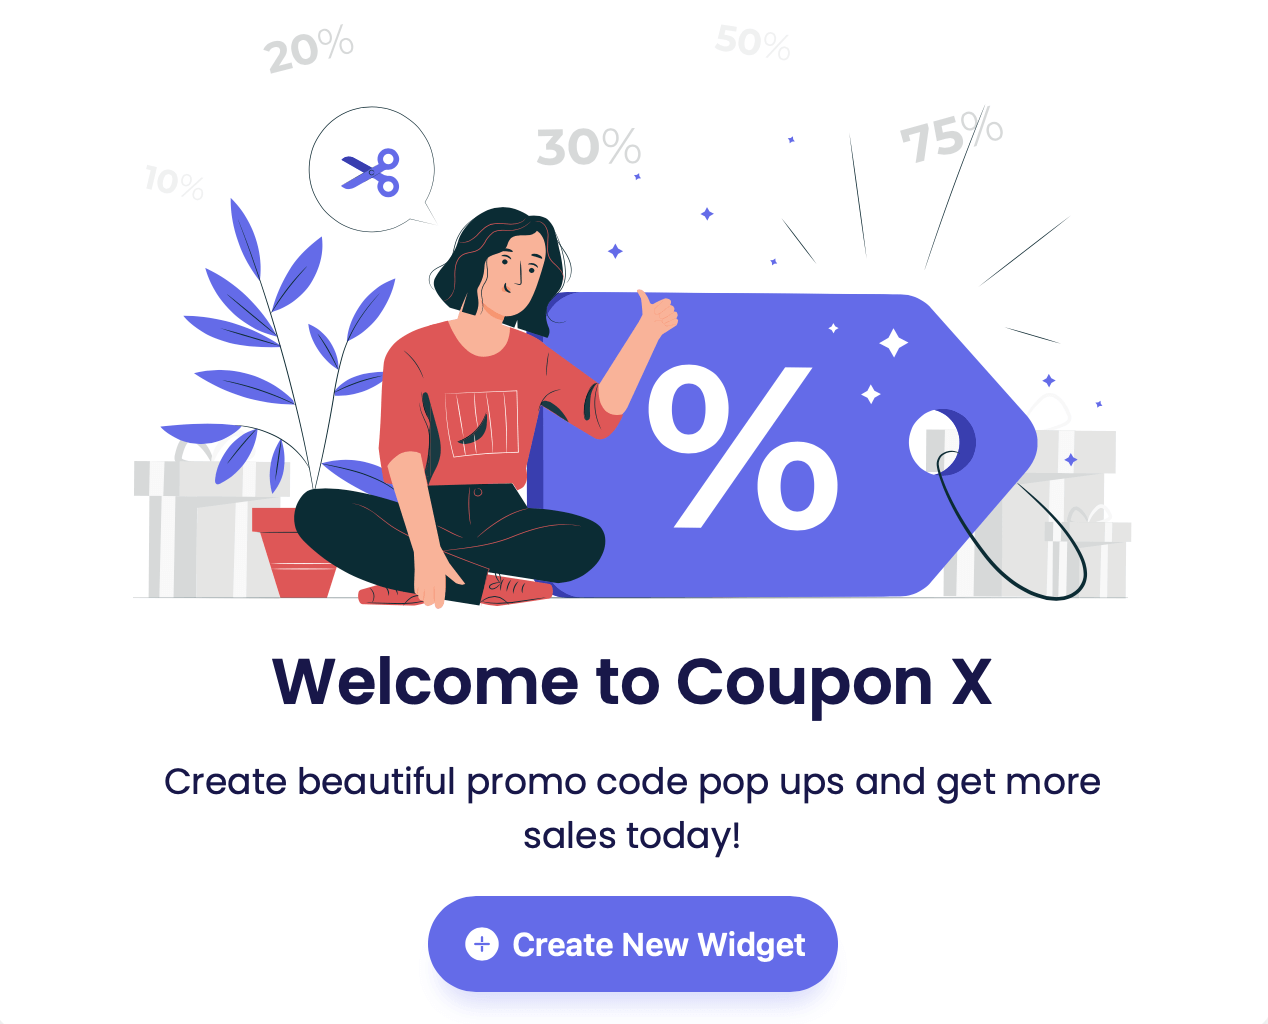 Coupon X: Discount Code Pop Up - Discount Code Popup, Promo Code